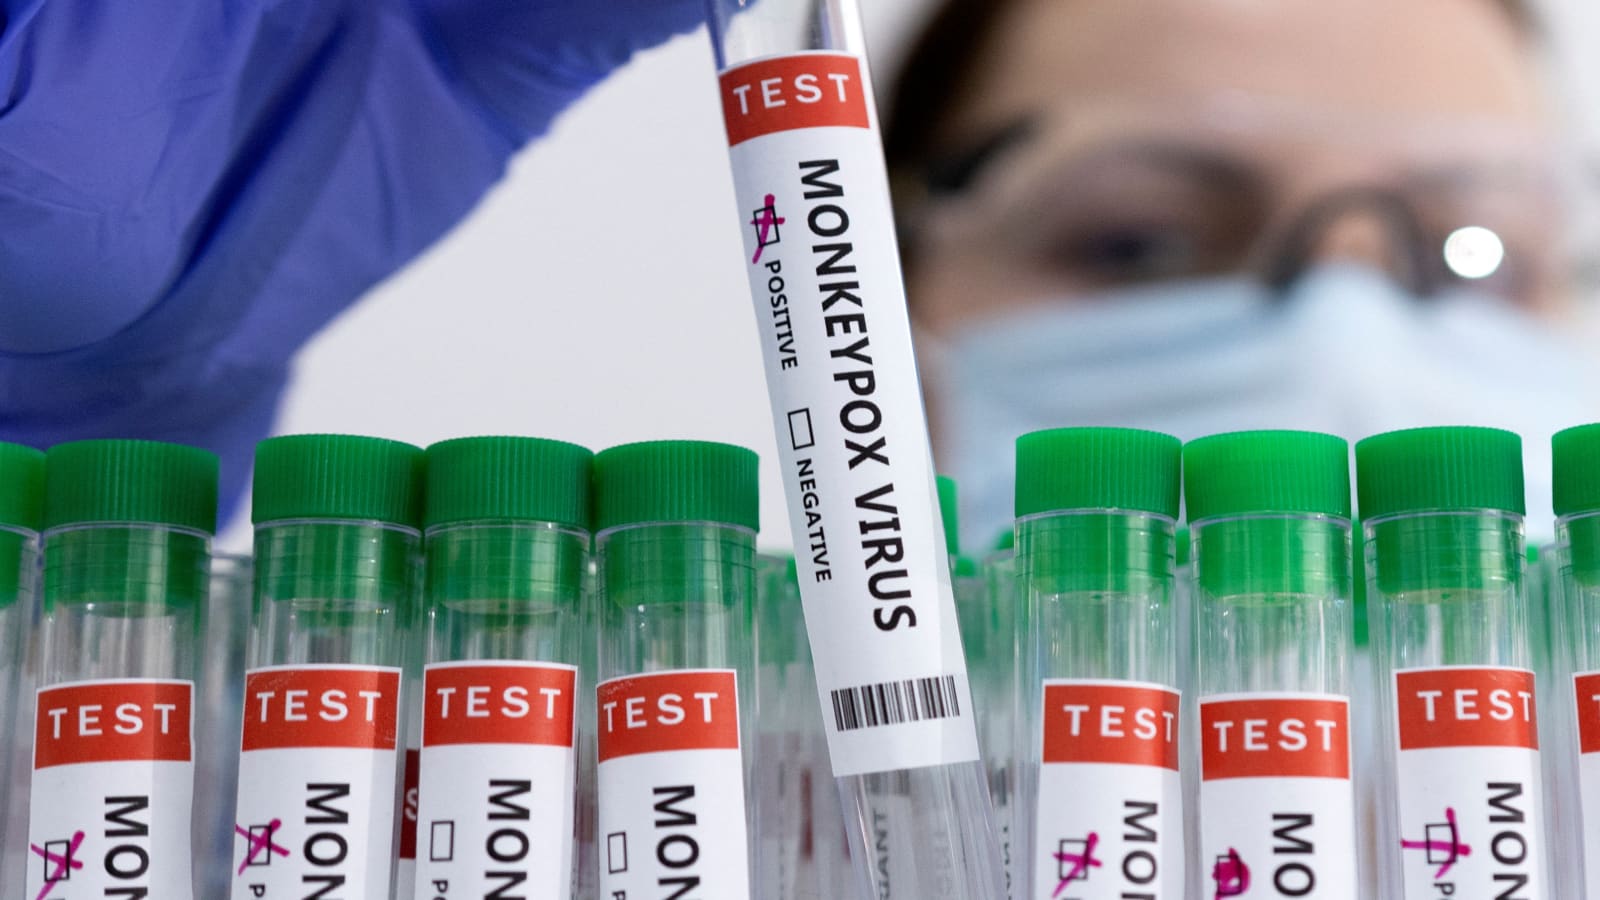 Roche develops test kits to detect monkeypox virus